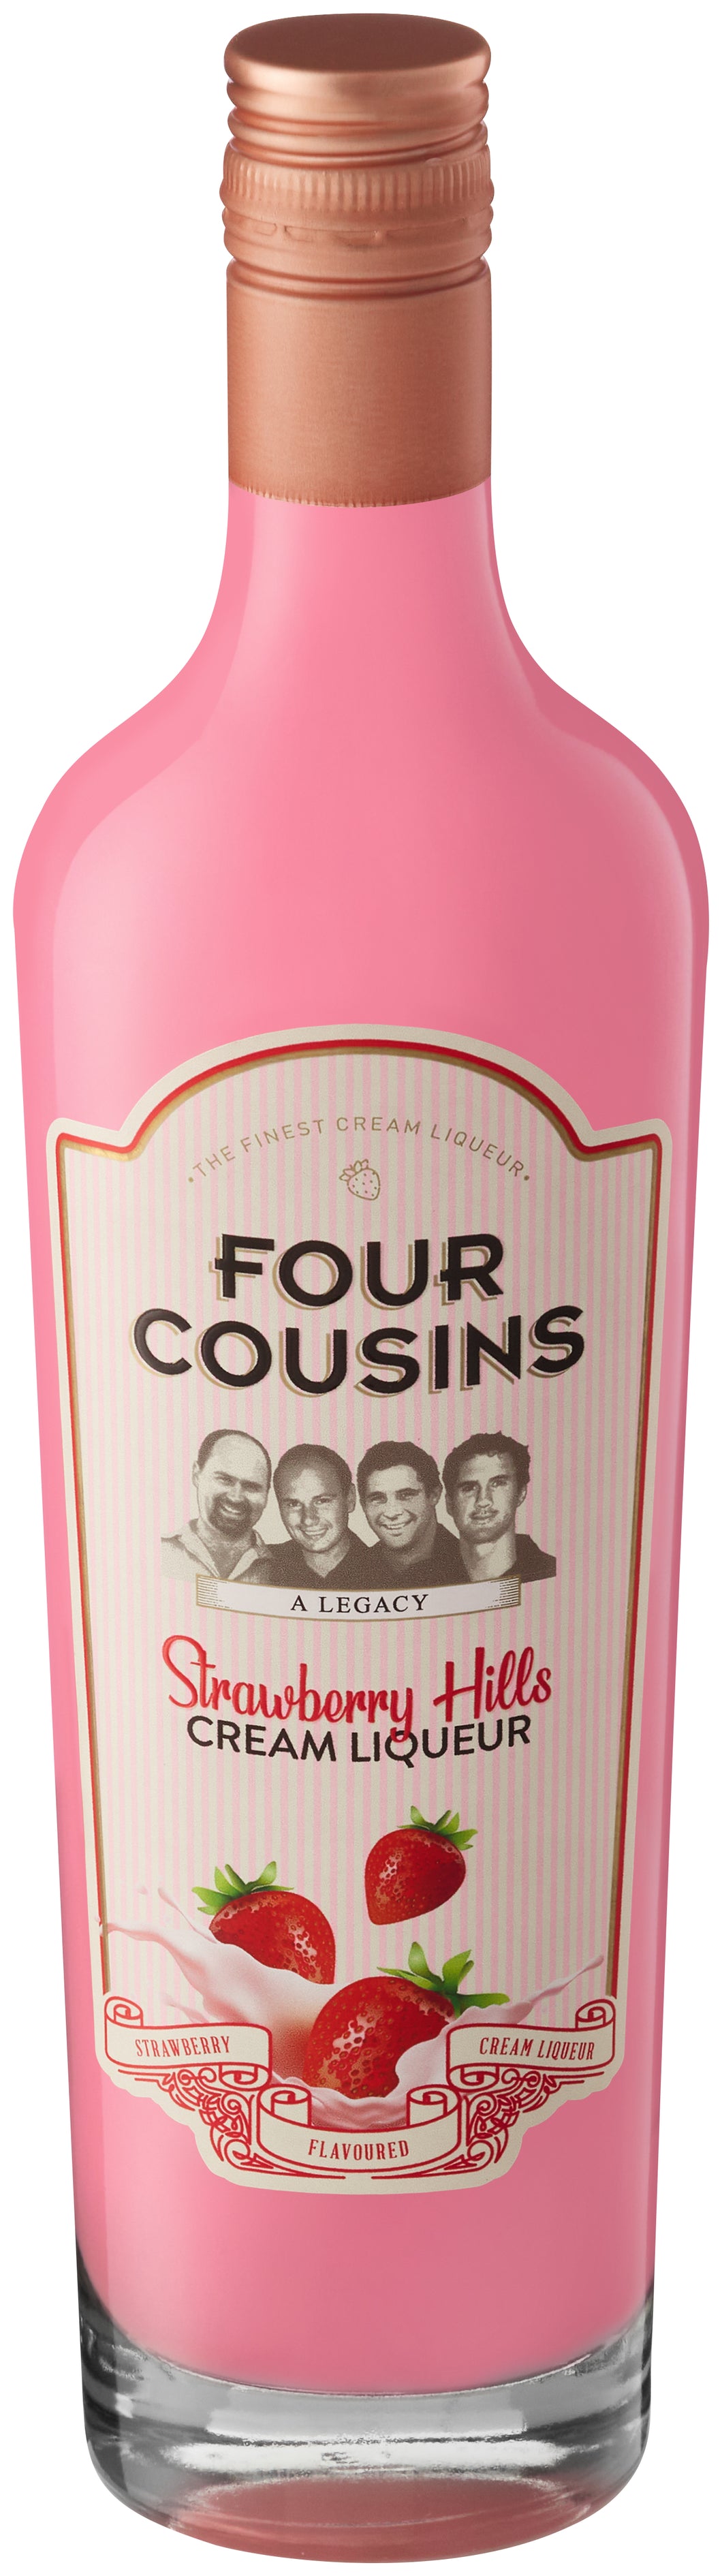 Four Cousins Strawberry Hills Cream Liqueur 12 x 500ml